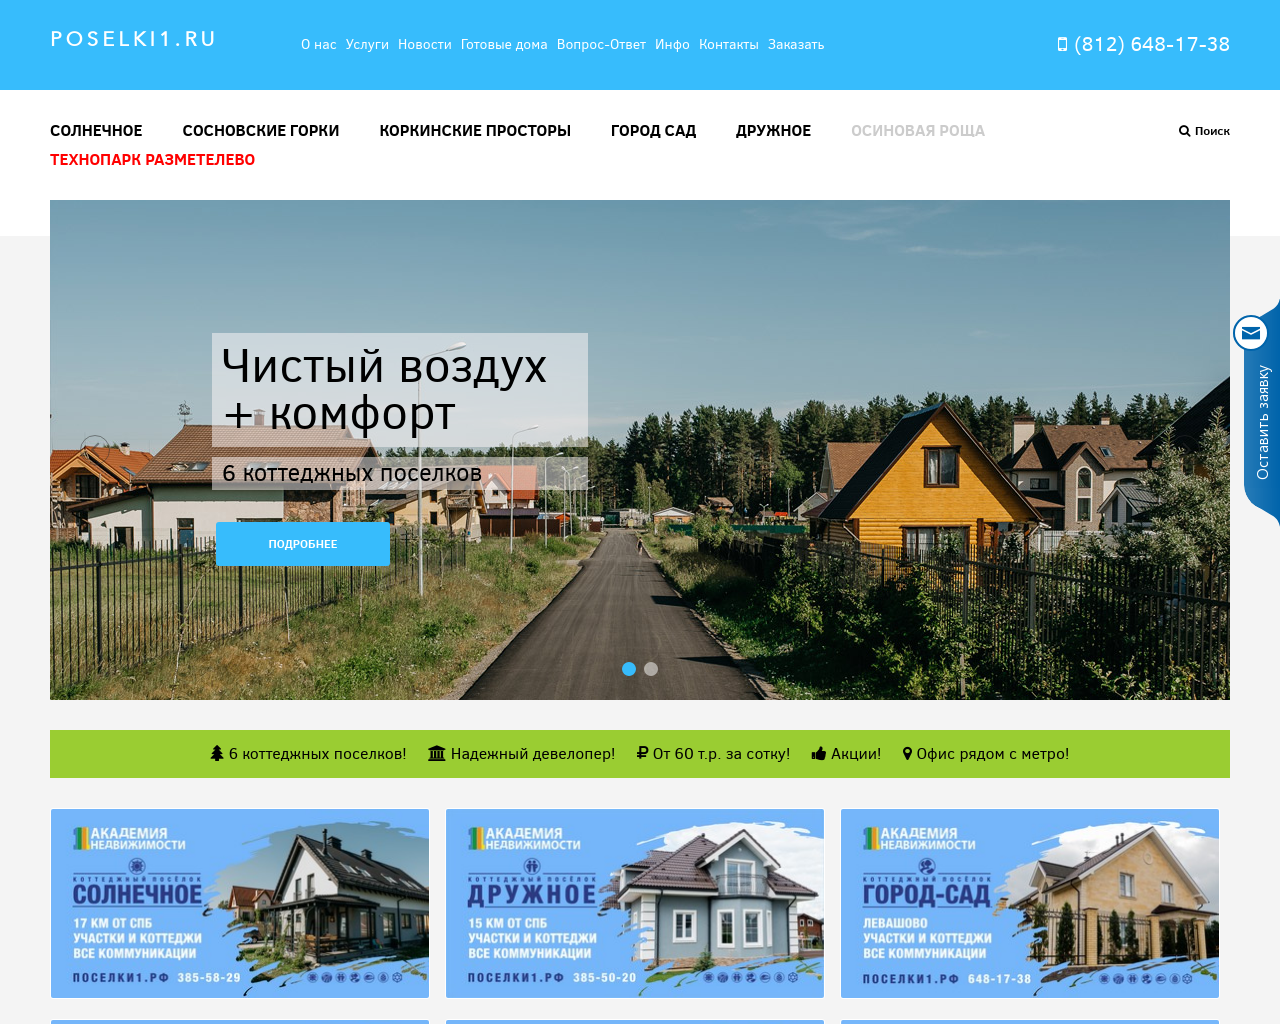 Изображение сайта poselki1.ru в разрешении 1280x1024